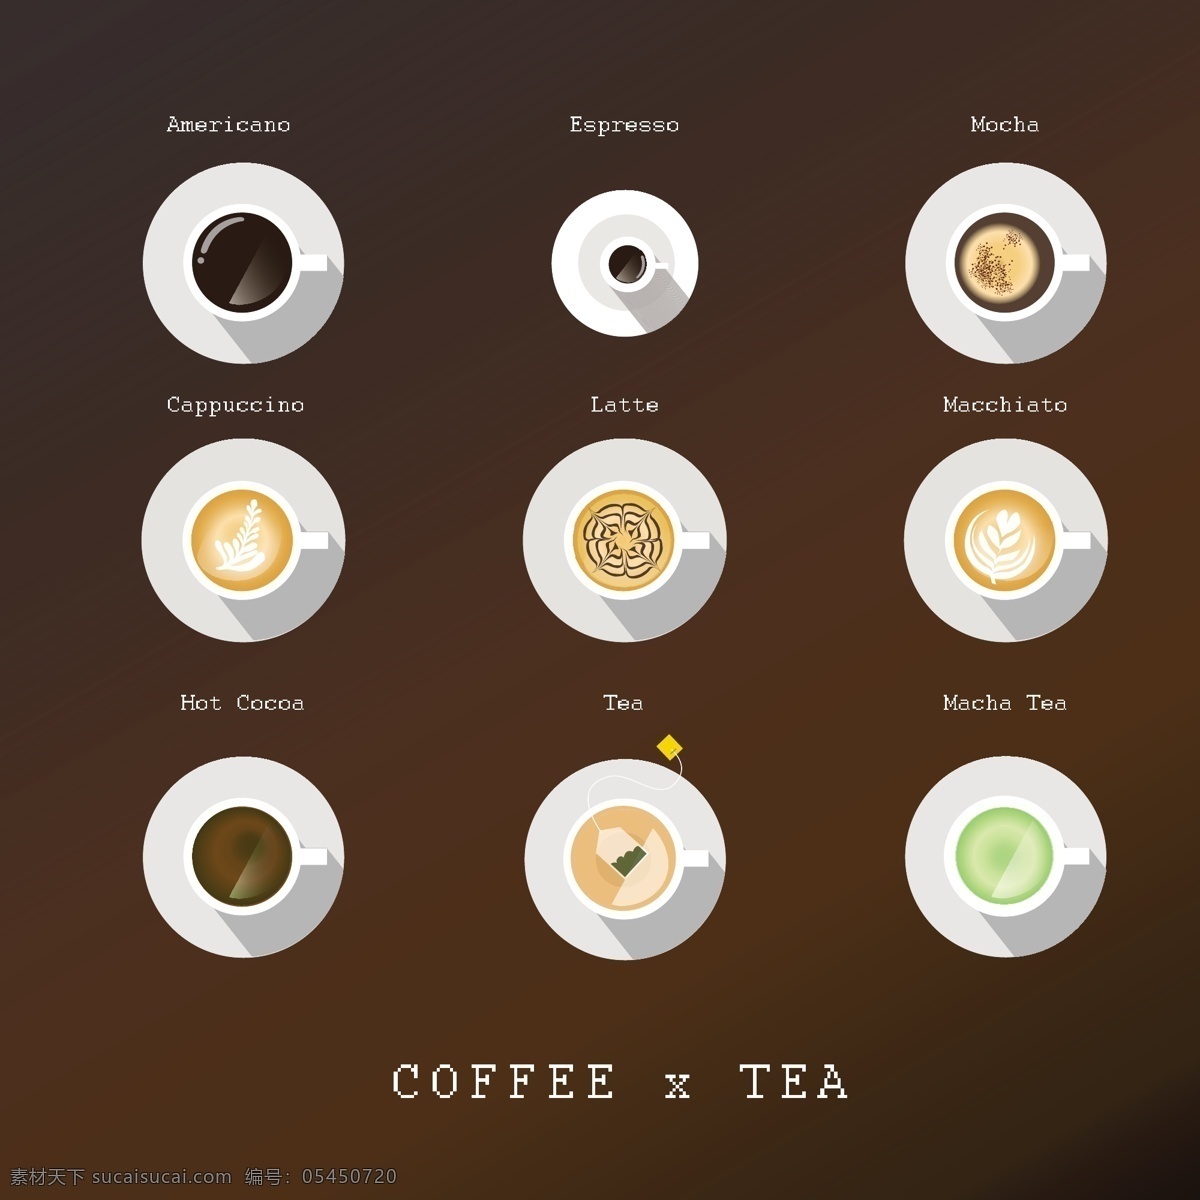 款 美味 咖啡 俯视图 矢量 美式咖啡 卡布奇诺 蒸馏咖啡 浓咖啡 摩卡咖啡 拿铁 热可可 抹茶 玛奇雅朵咖啡 茶 饮品 矢量图